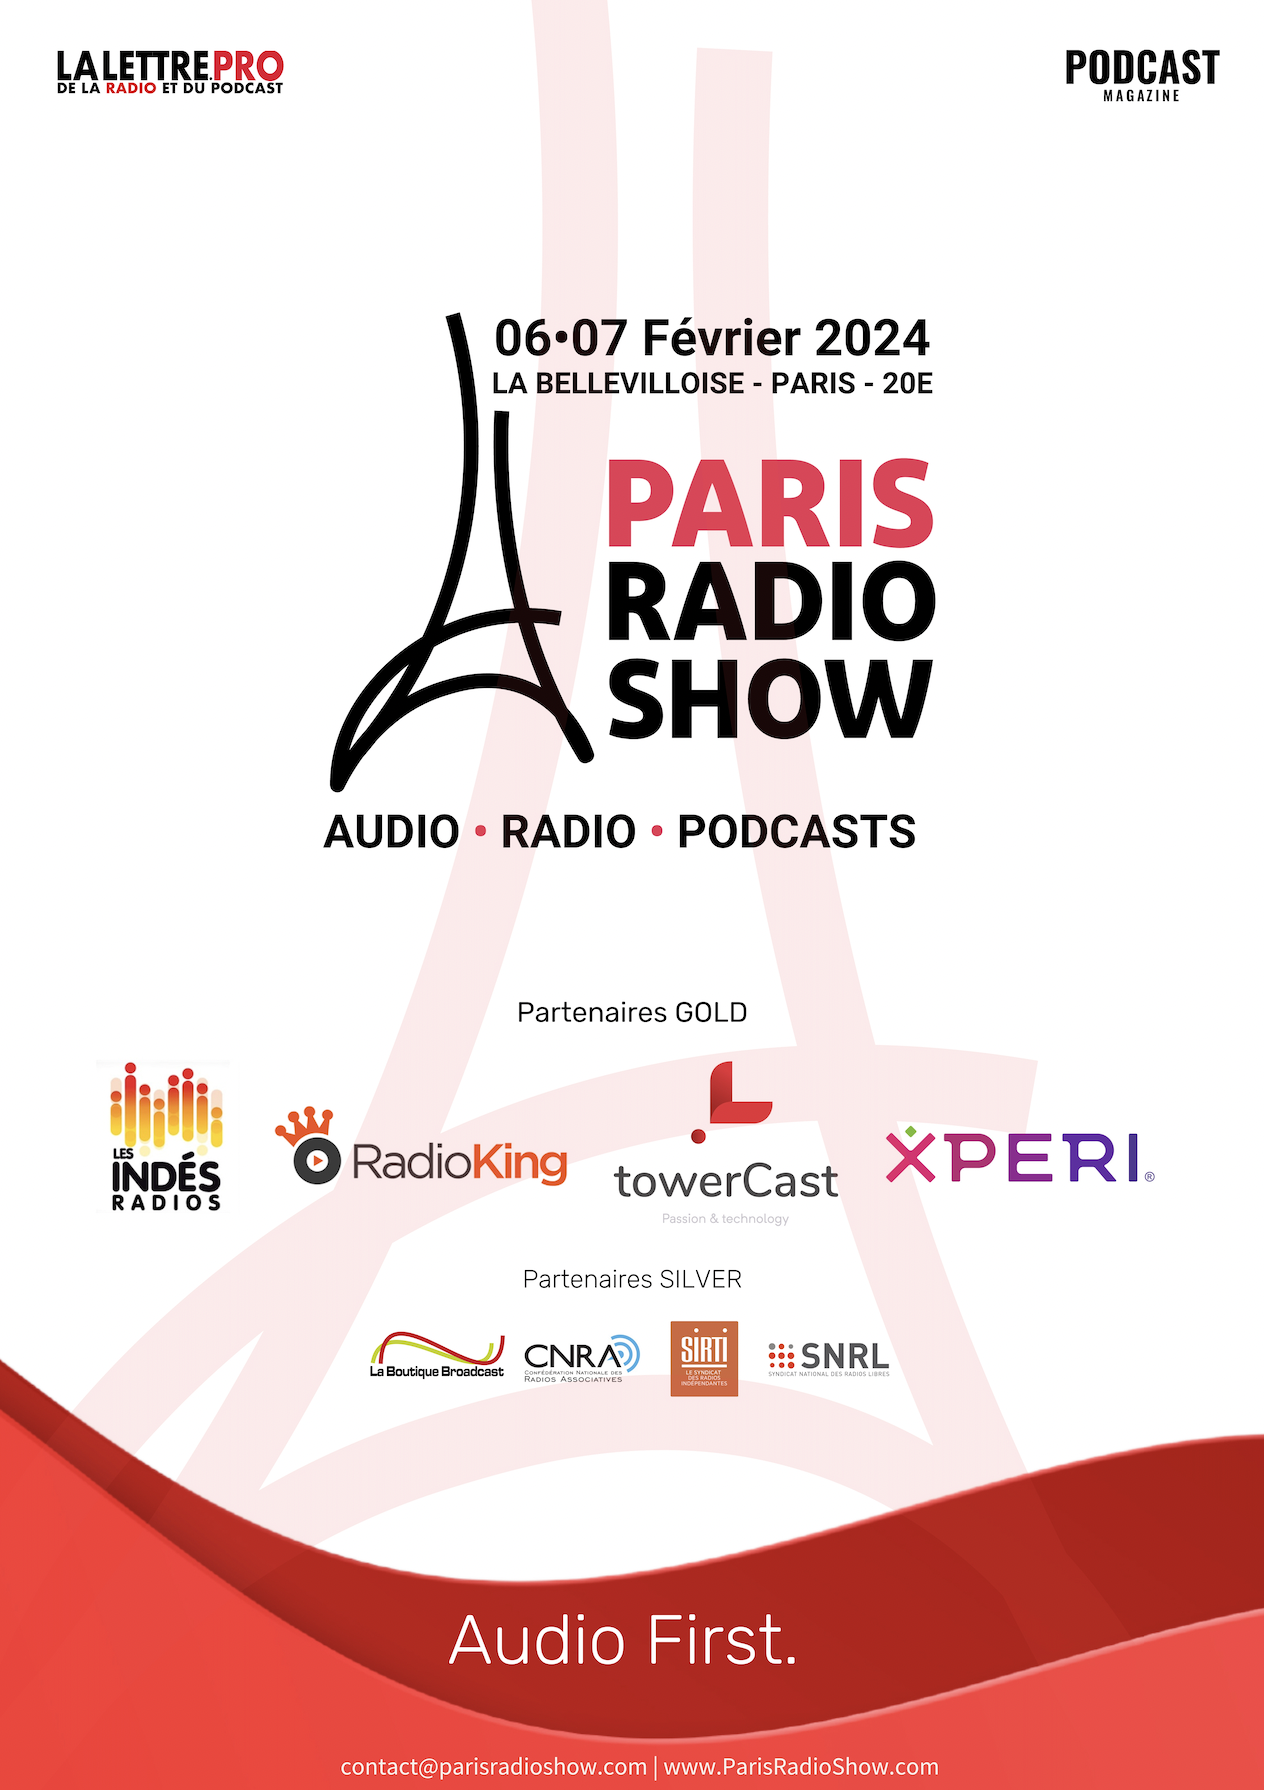 Téléchargez votre badge pour le Paris Radio Show